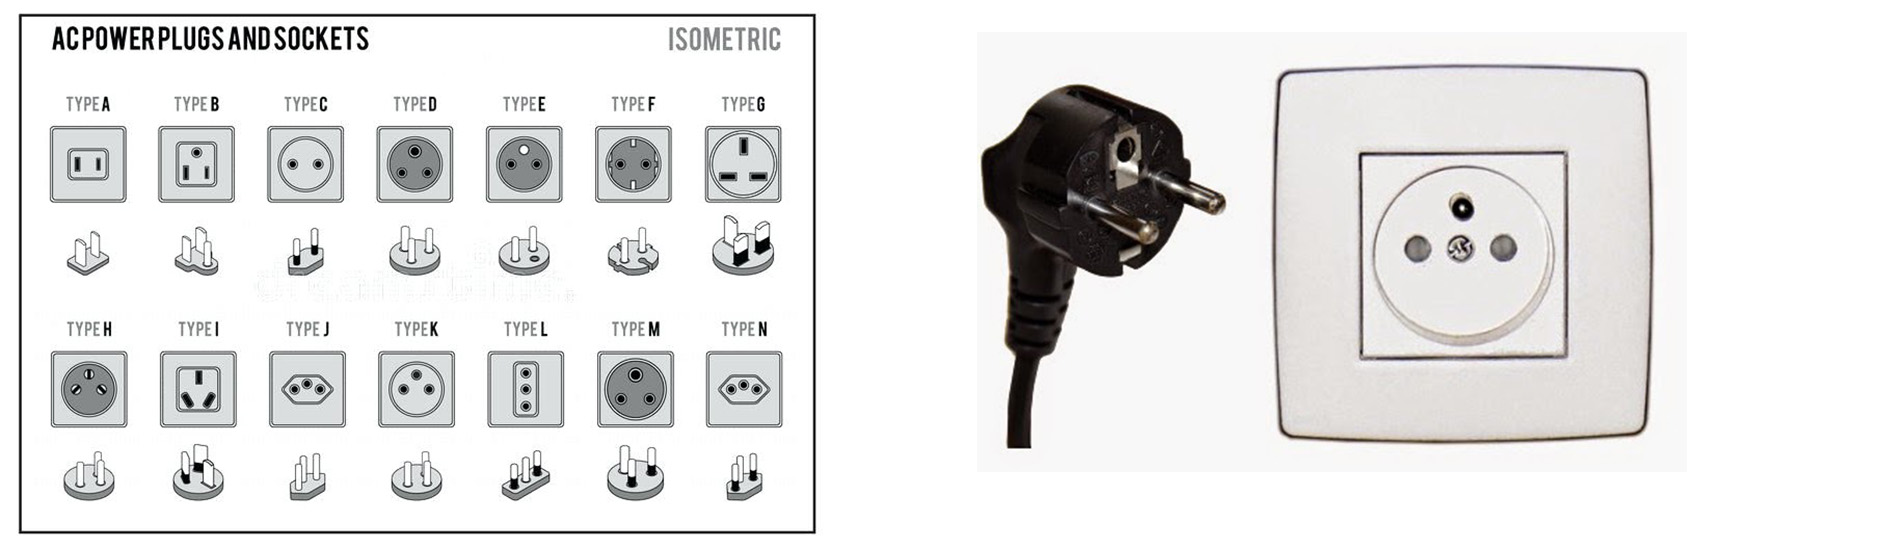 c-power-plug-and-socket-mongolia